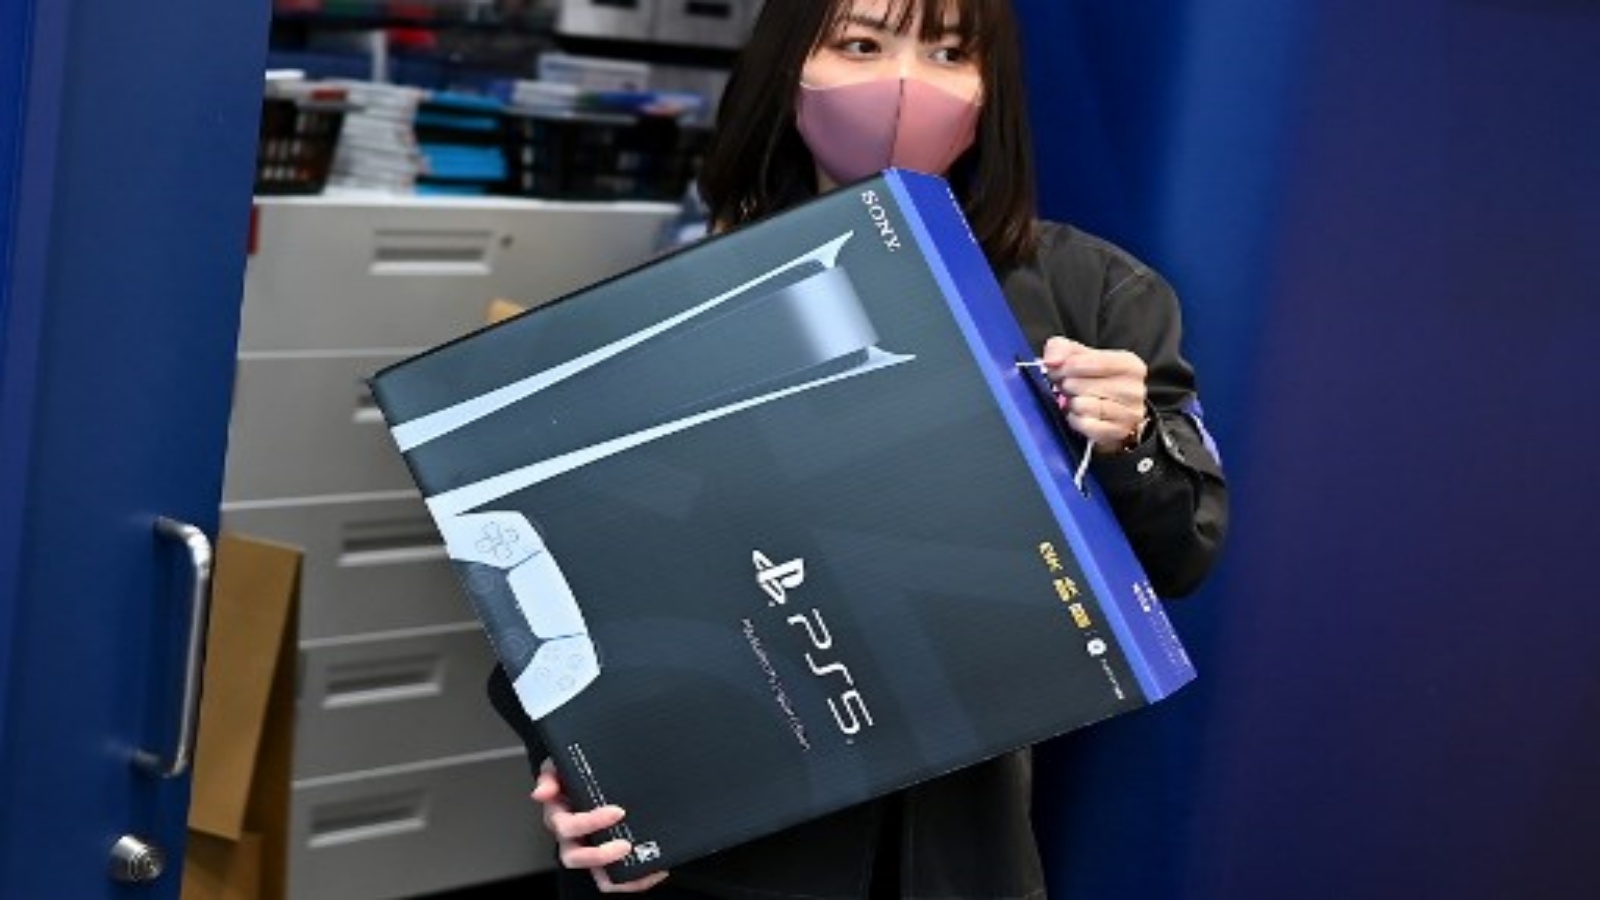 موظفة من Sony PlayStation 5 الجديدة في اليوم الأول من إطلاقه ، في متجر للإلكترونيات في كاواساكي محافظة كاناغاوا في 12 نوفمبر 2020.